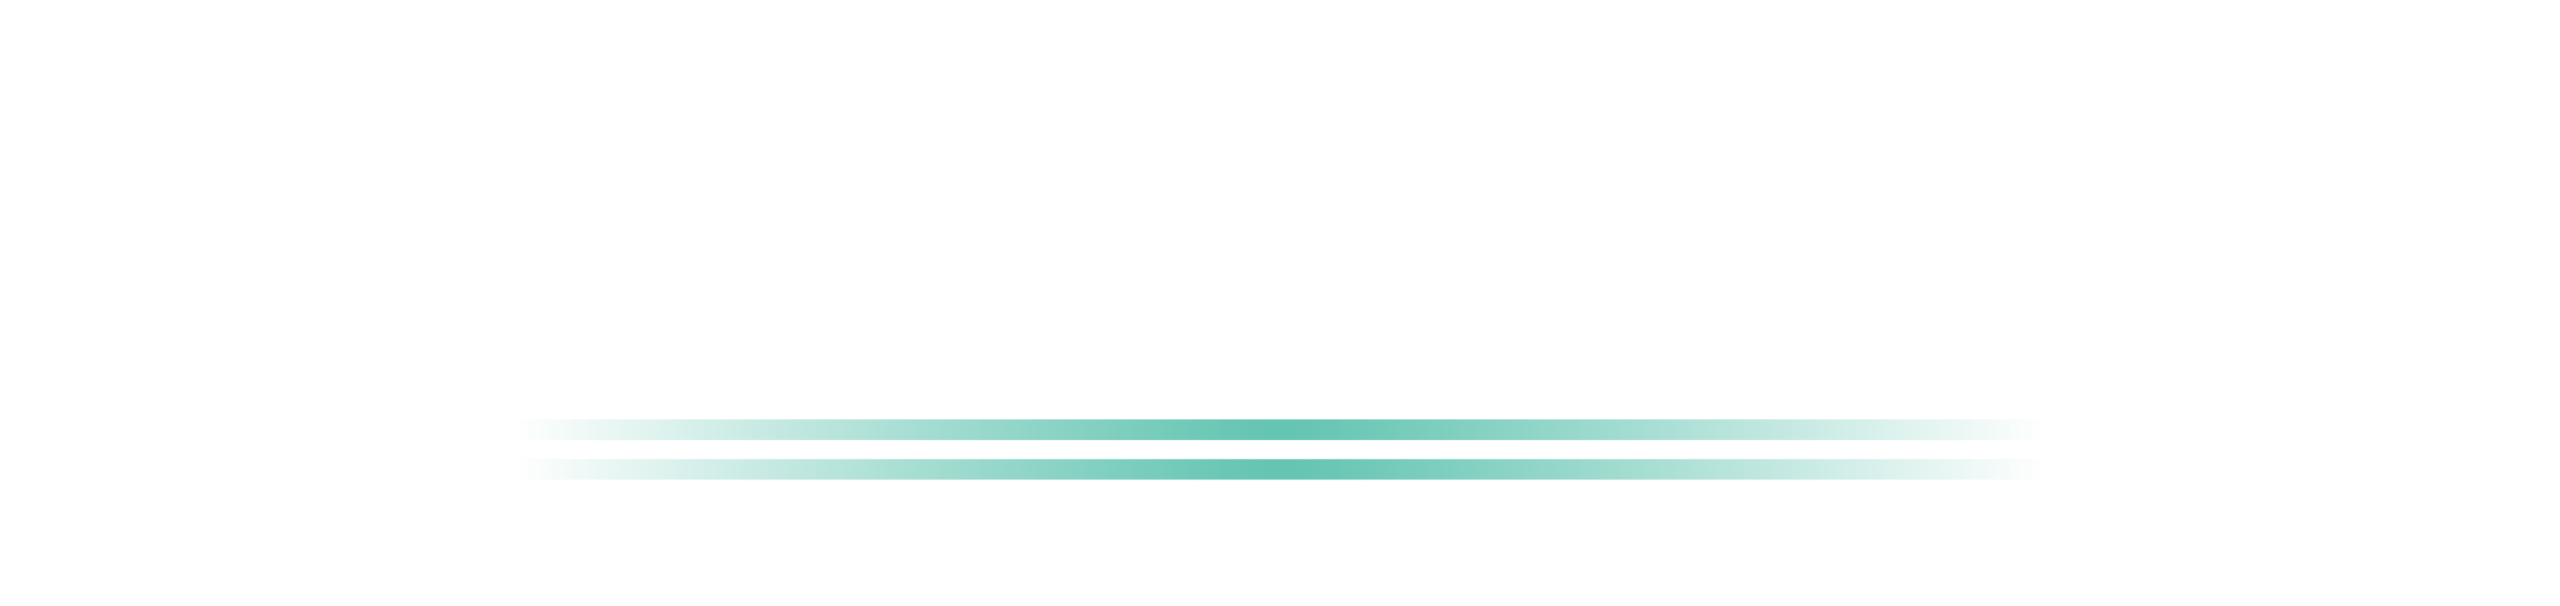 merBanking logo